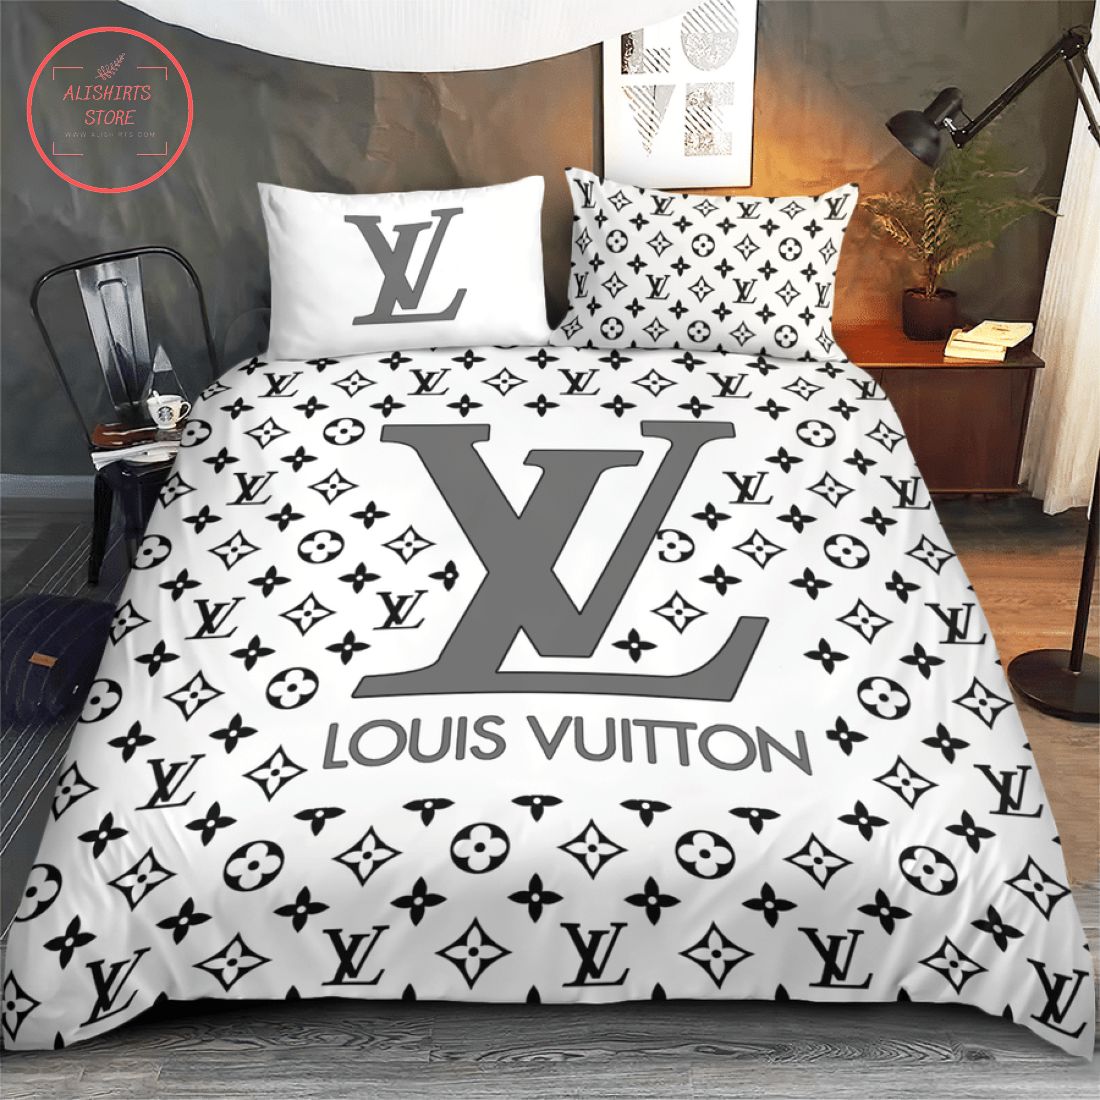 Louis Vuitton Lv Luxury Brand All White Bedding Set